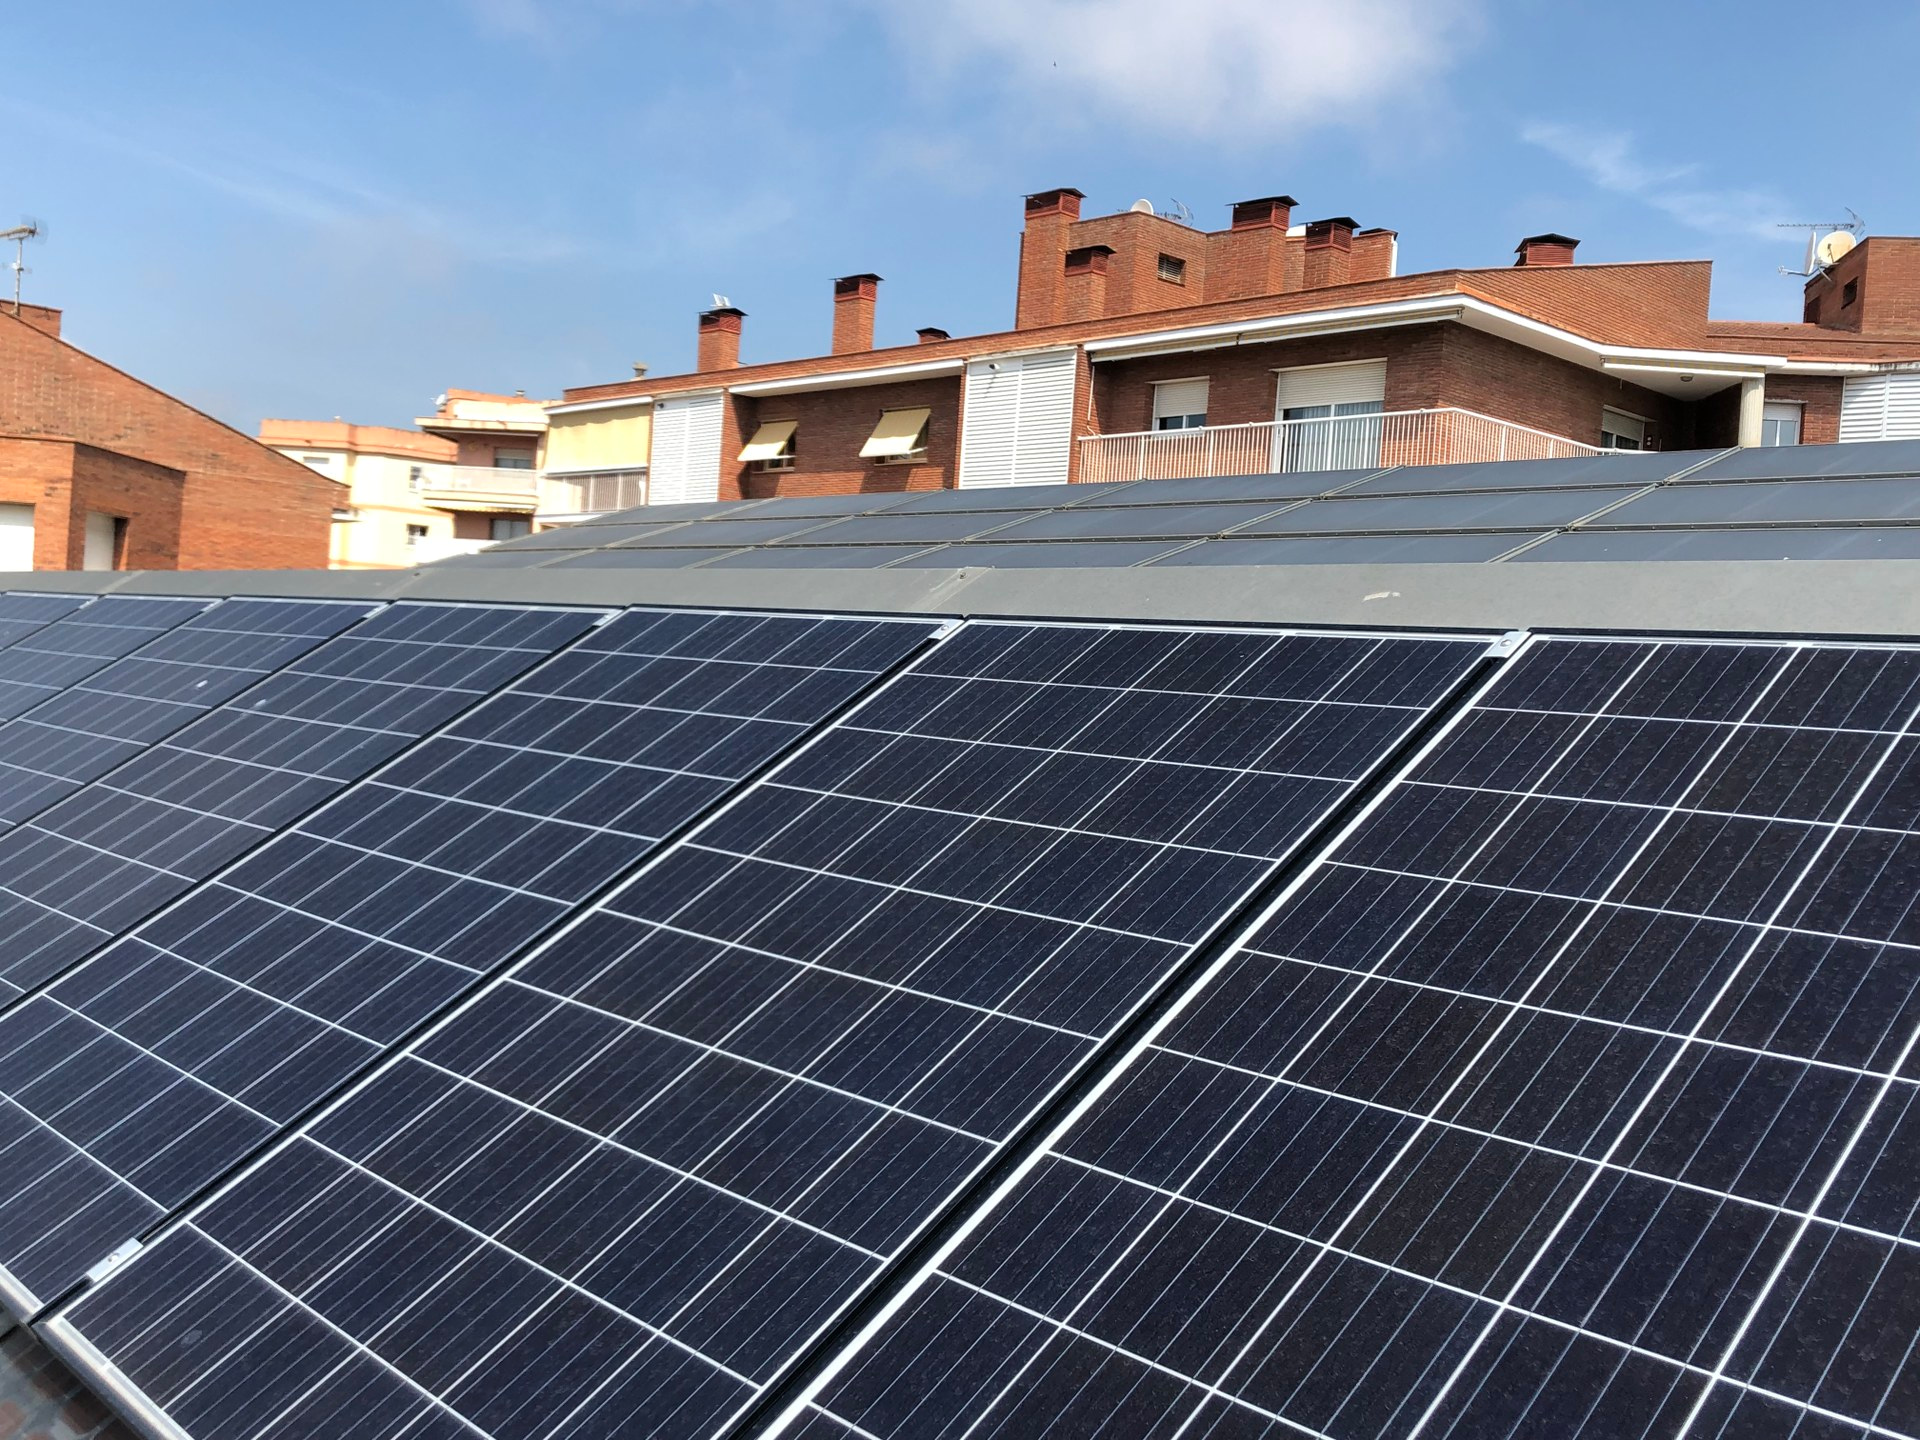 Plaques fotovoltaiques a la Biblioteca Pública Pompeu Fabra. Foto: Ajuntament de Mataró